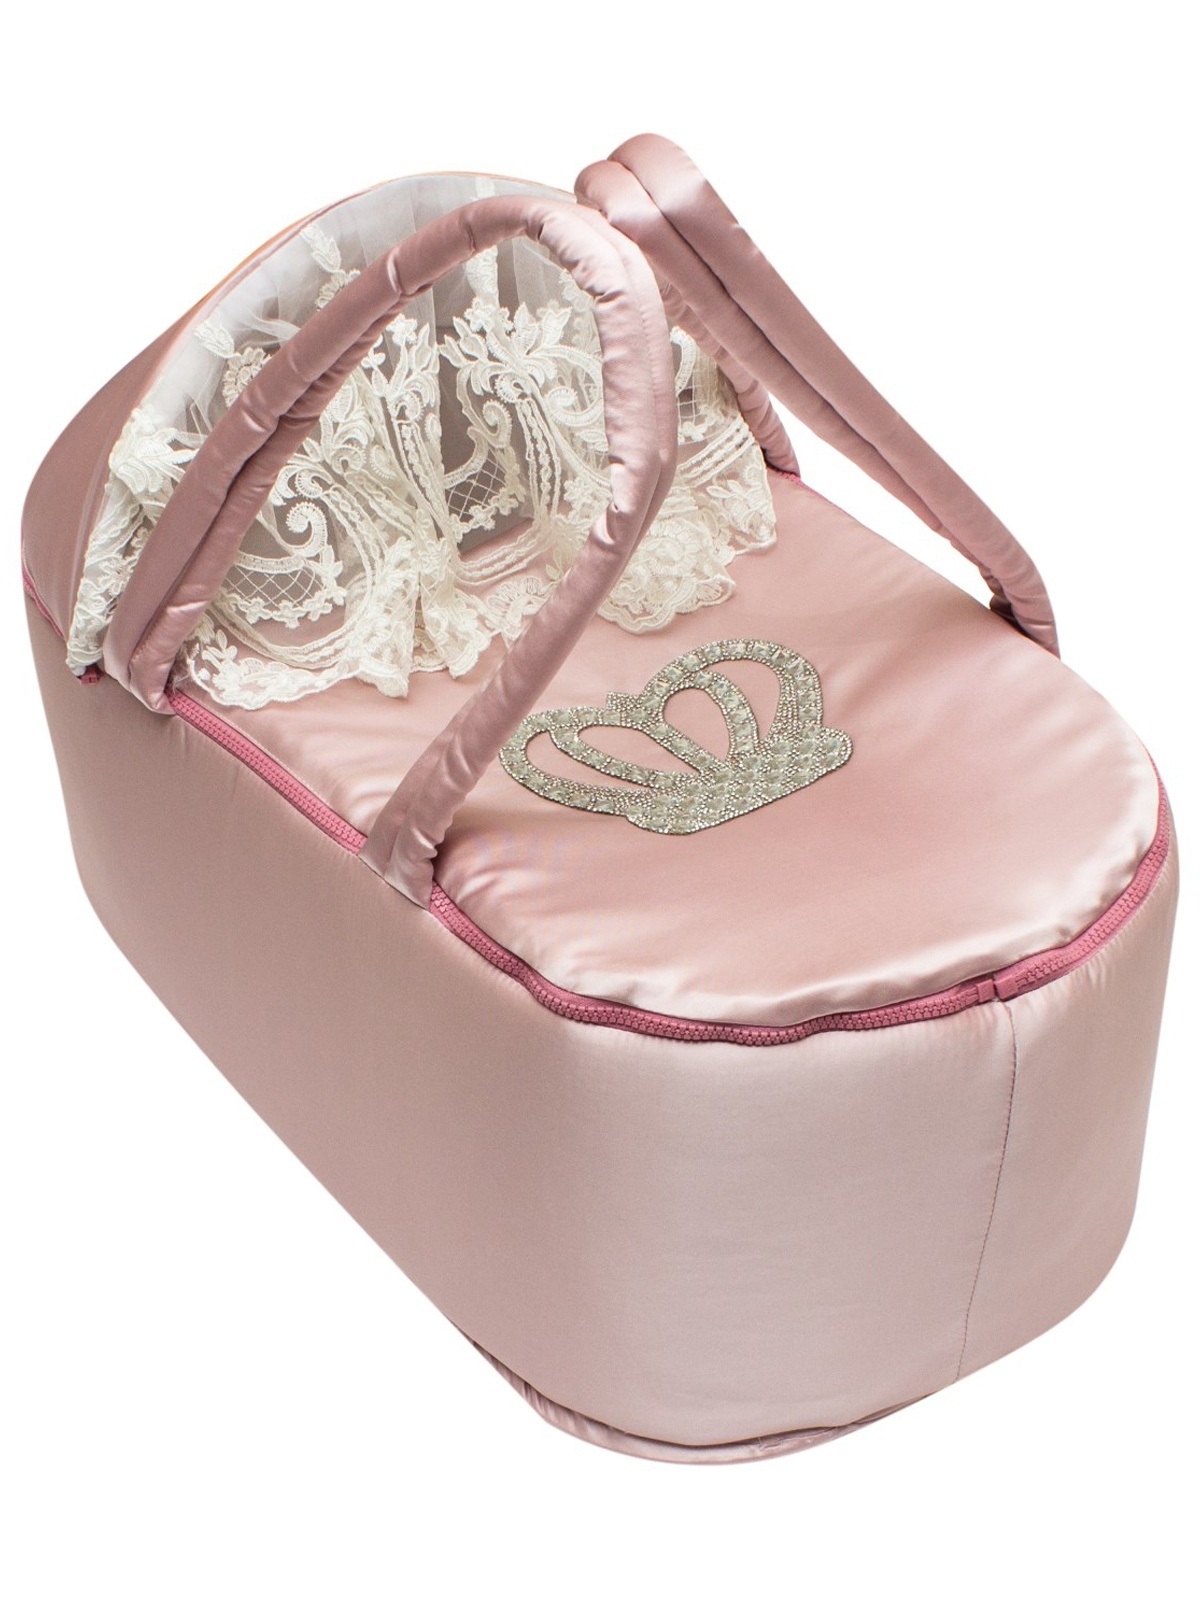 Люлька-переноска Luxury Baby Люлька переноска Королевская розовый